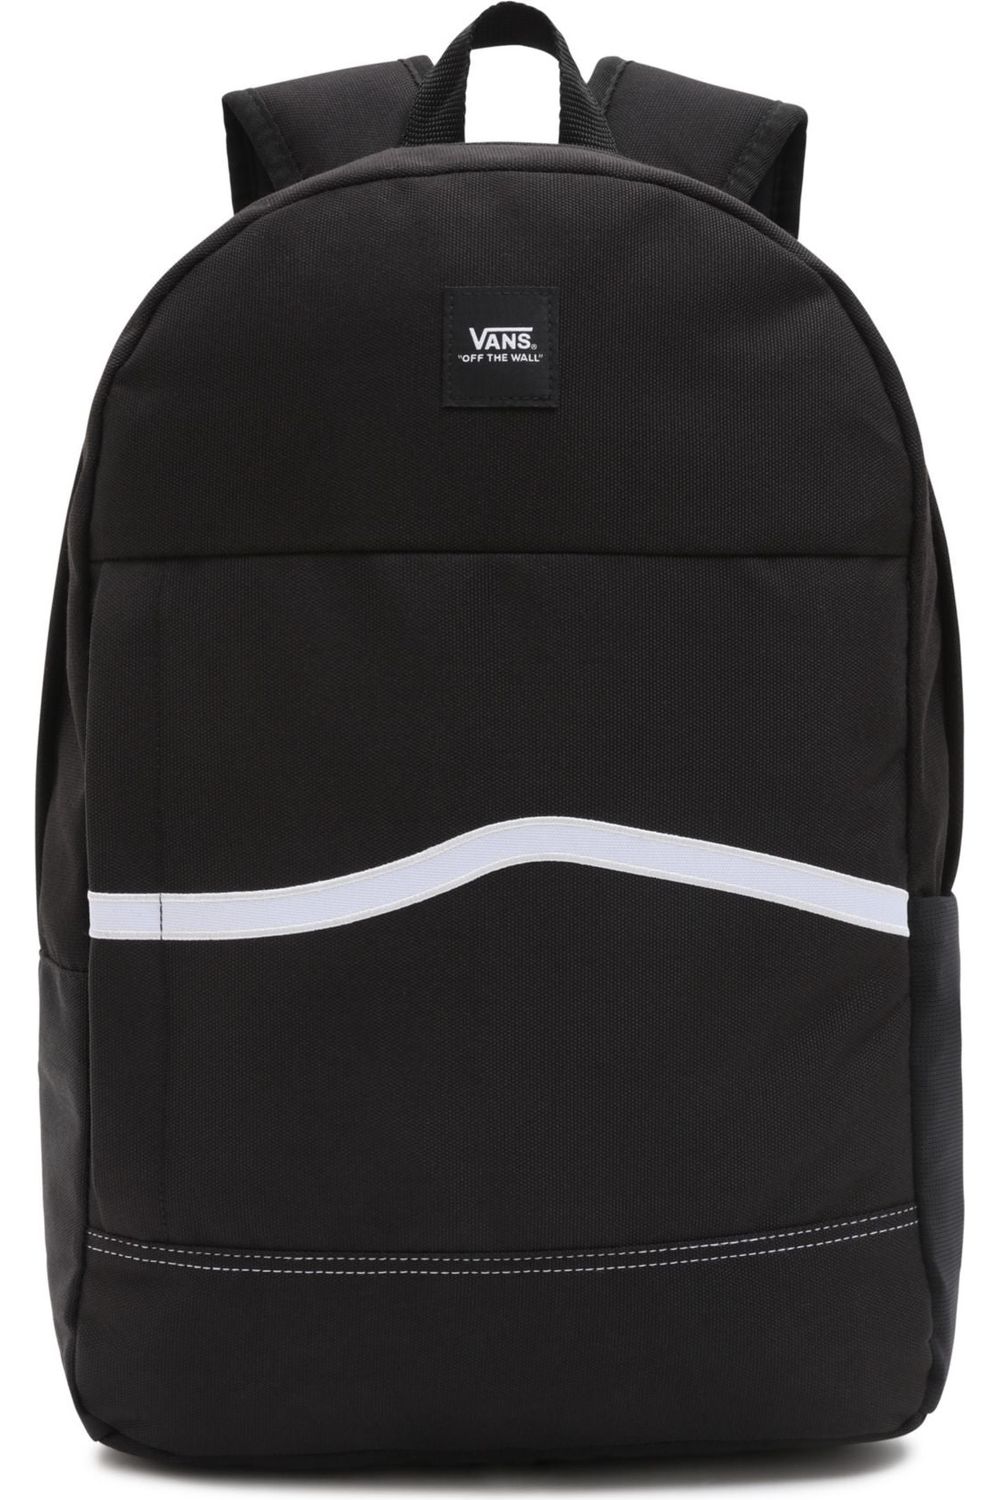 Vans MN Construct Skool Backpack Black White